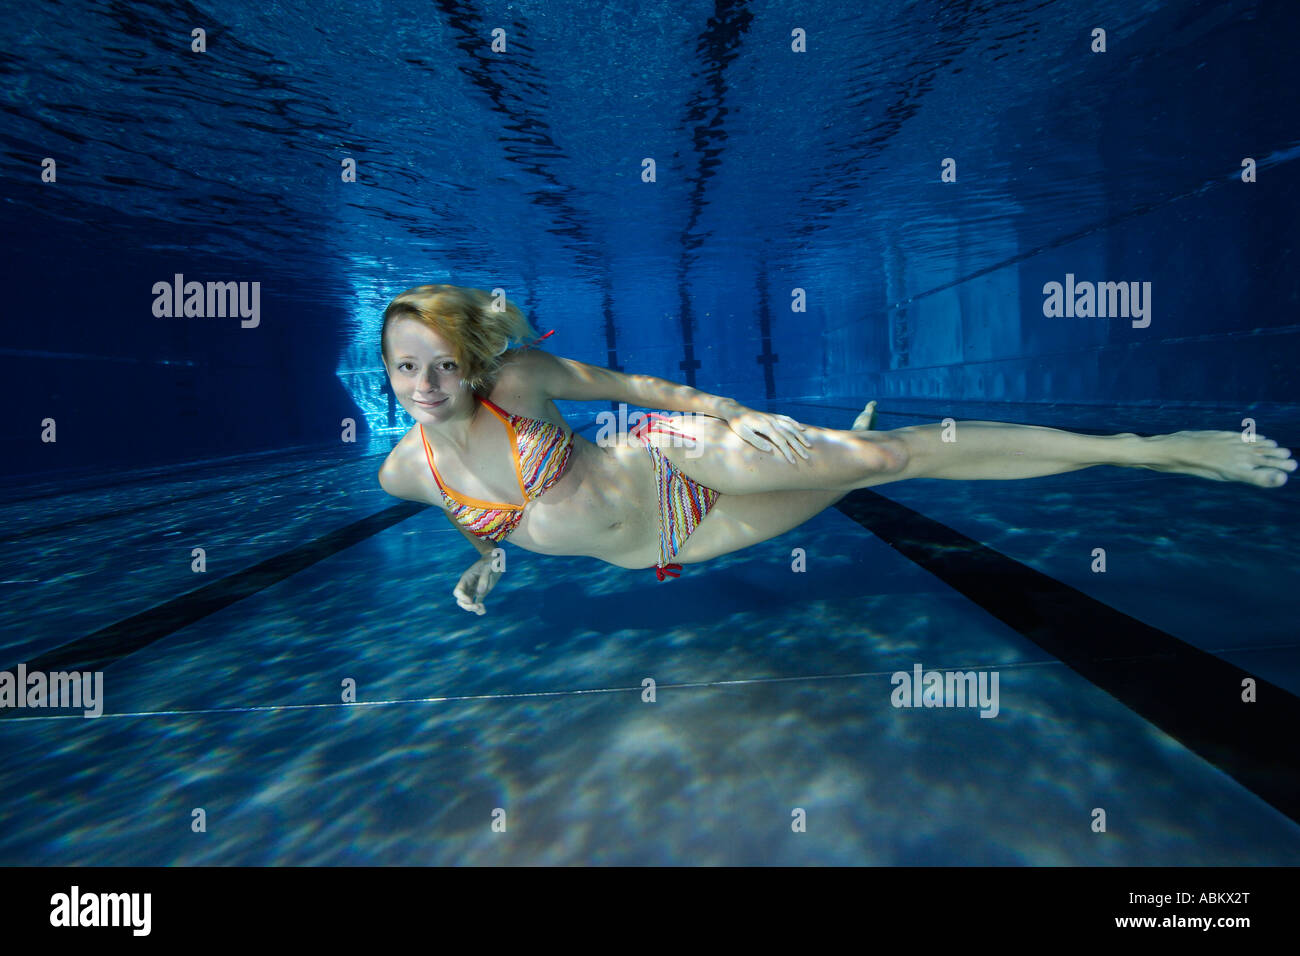 freediving bikini girl in a pool Stock Photo - Alamy